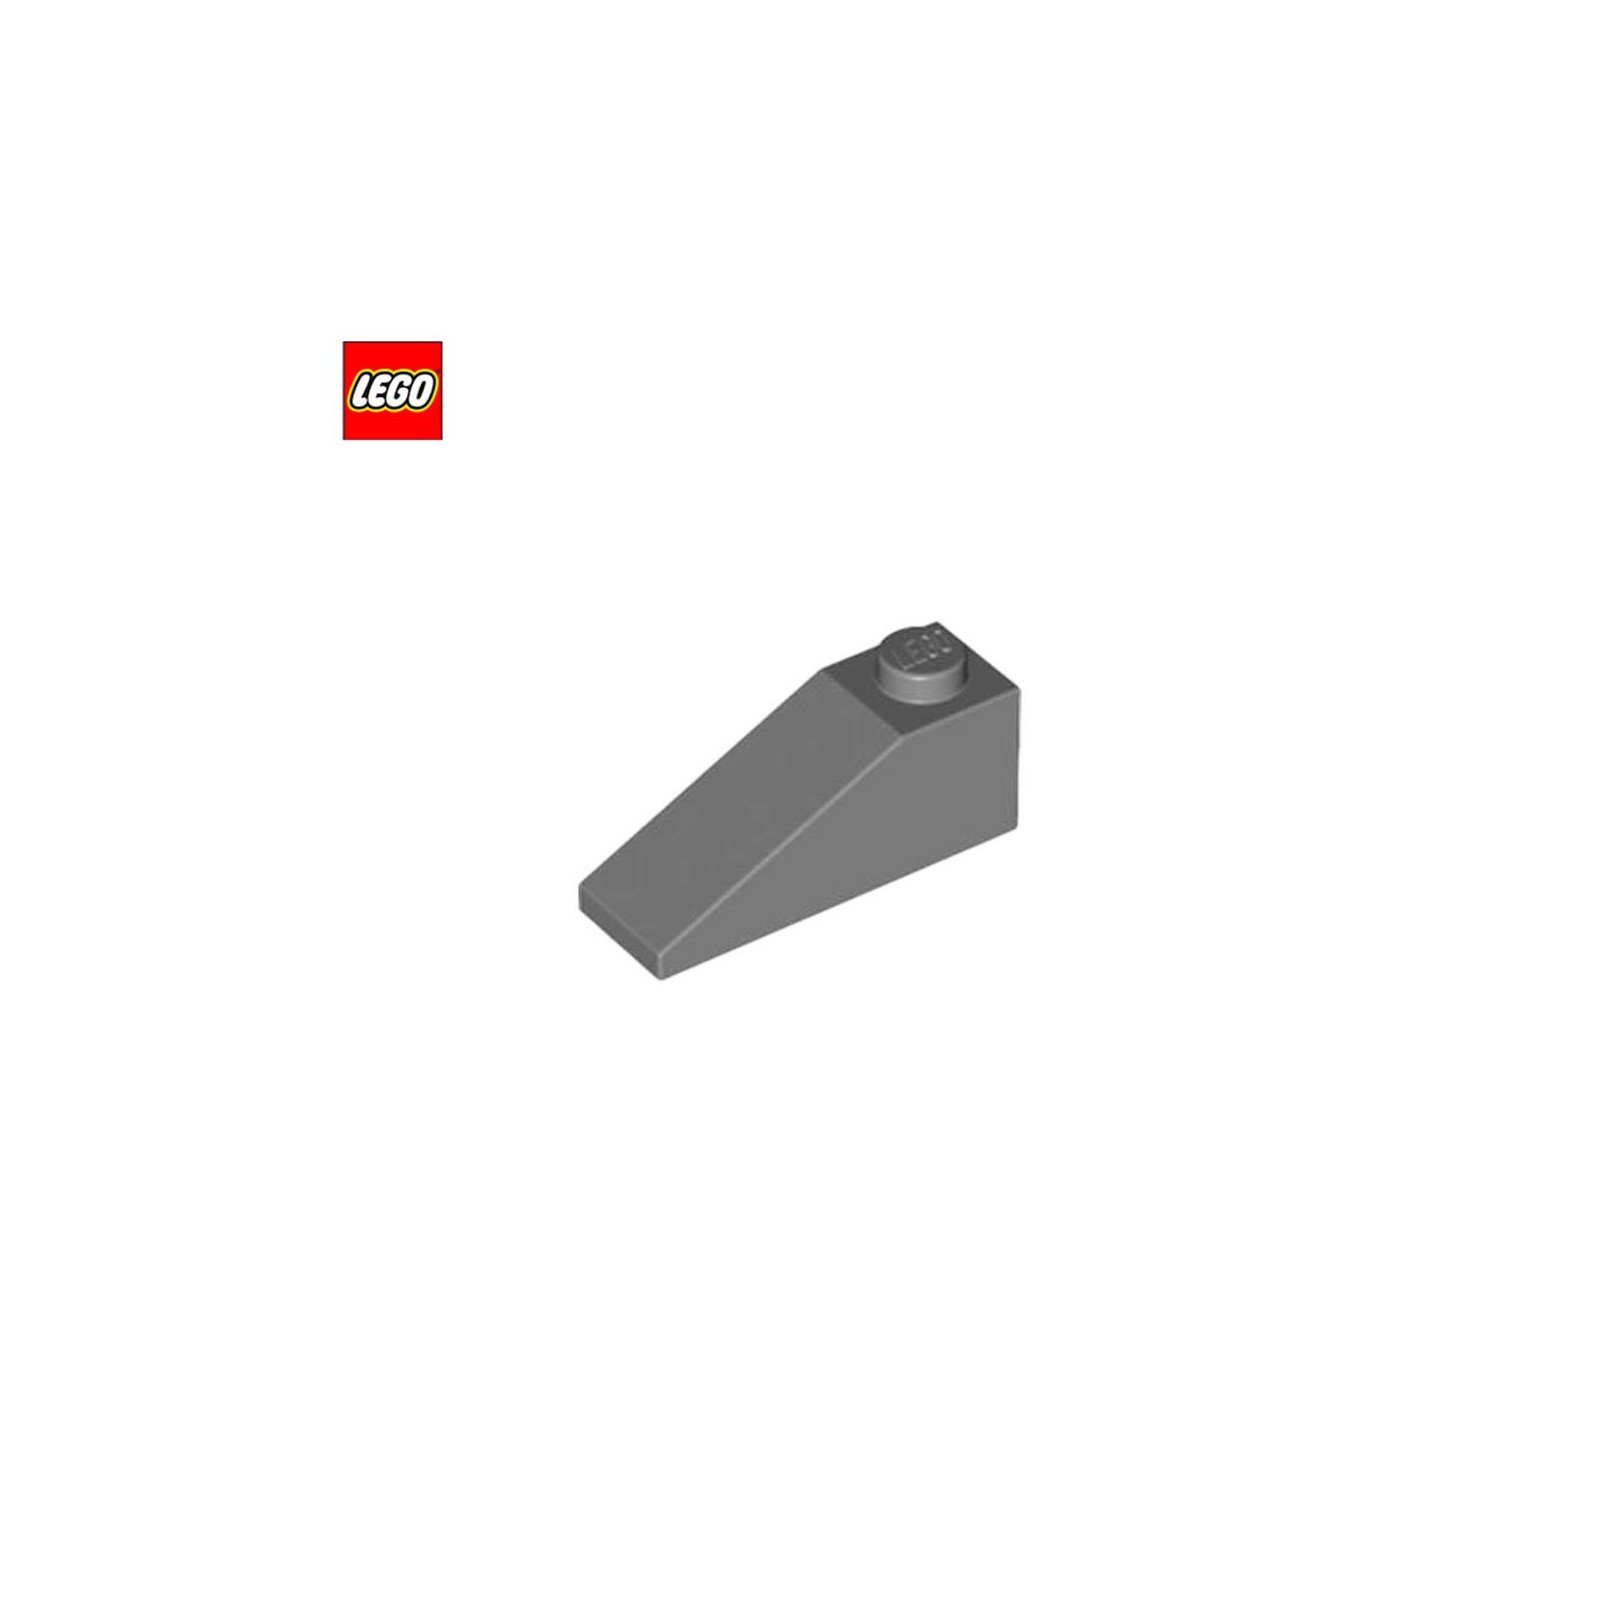 Slope 33° 3x1 - LEGO® Part 4286